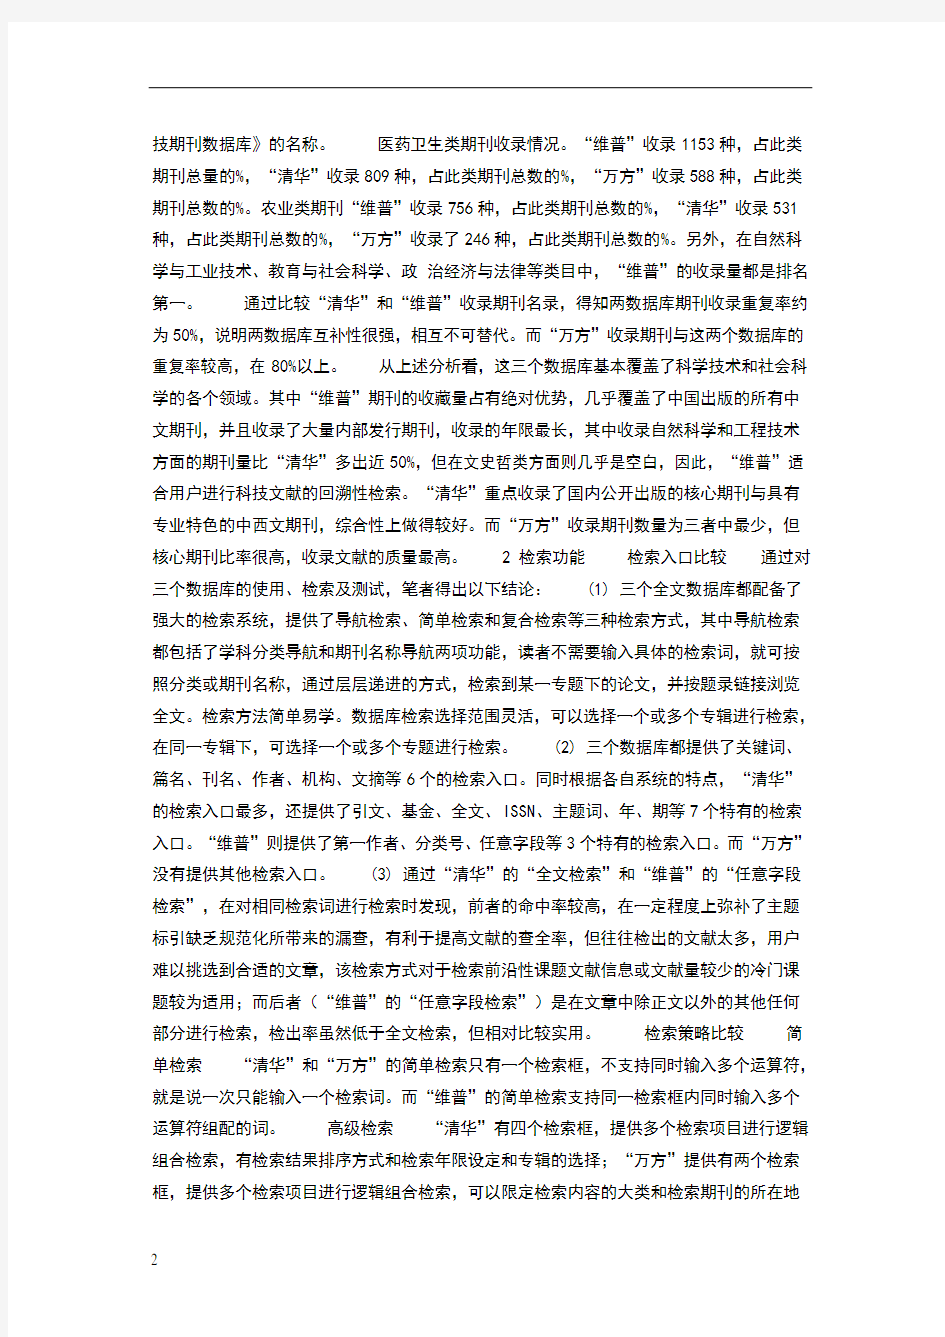 国内三大中文期刊全文数据库的比较